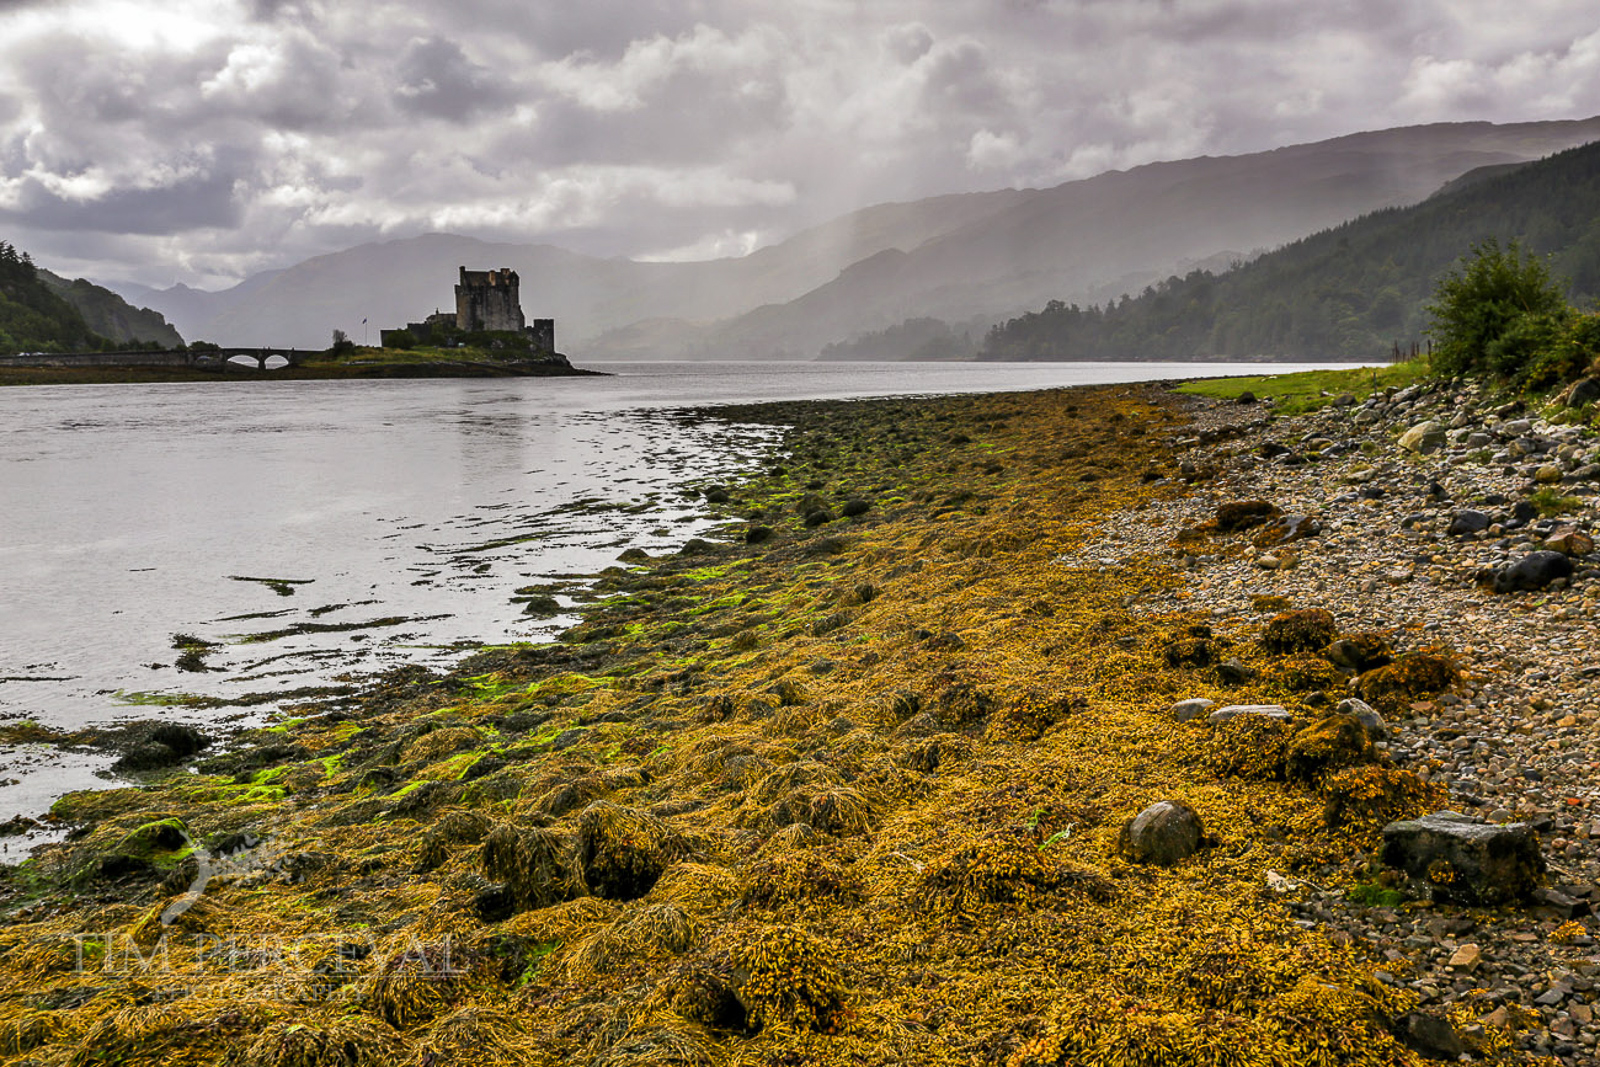  Eileen Donan Castle from the shore of Loch Duich 